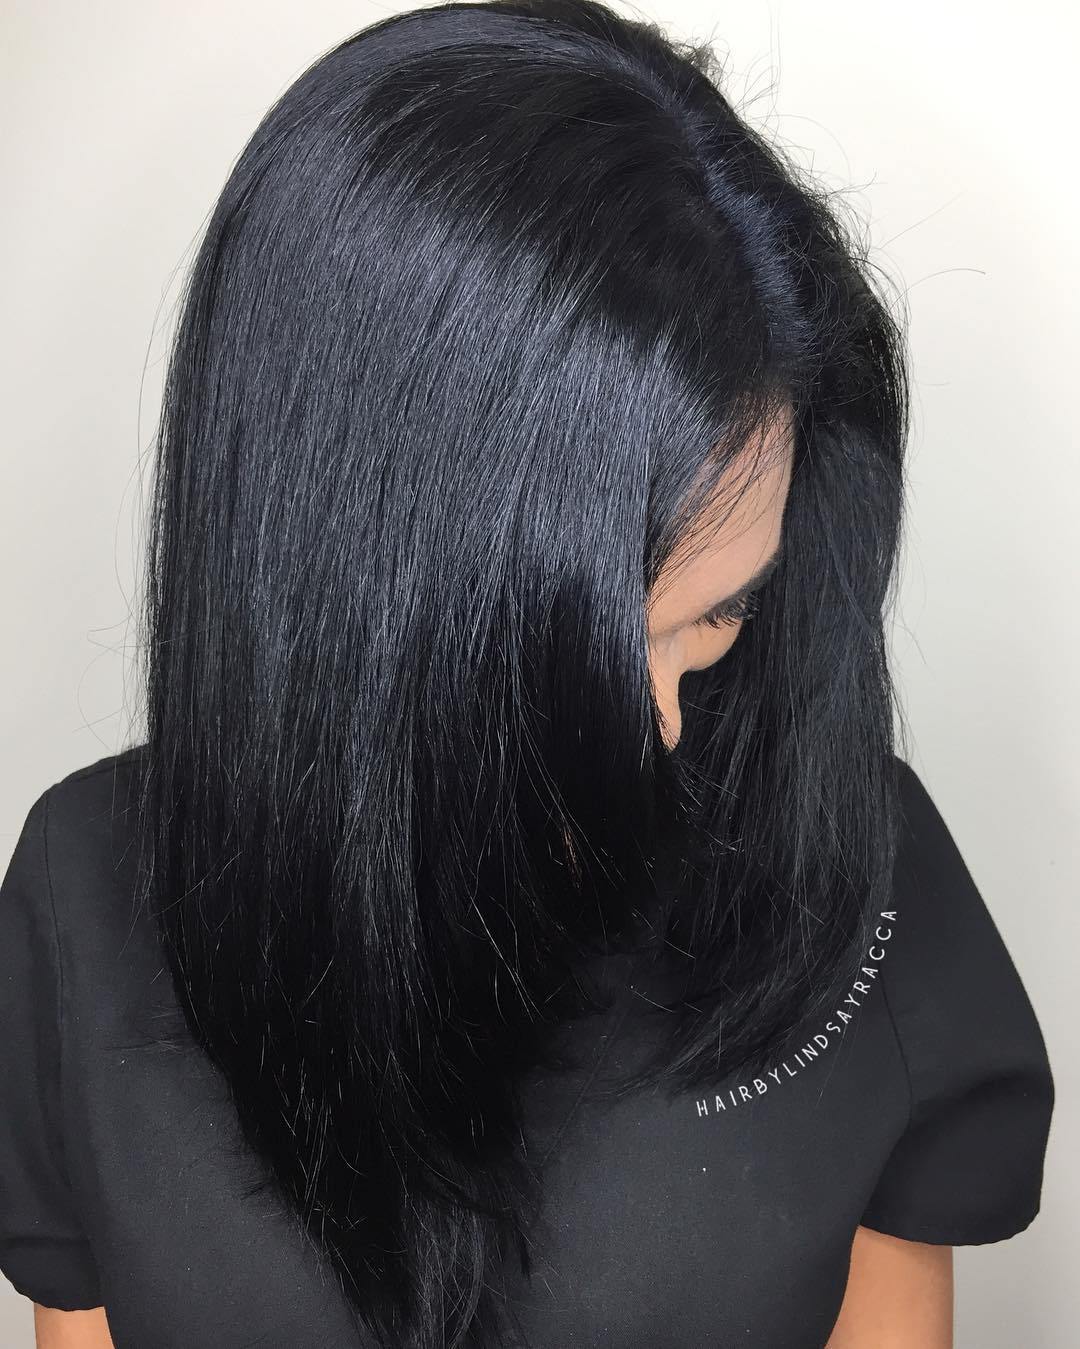 Blue Black Hair: Wie man es richtig macht  